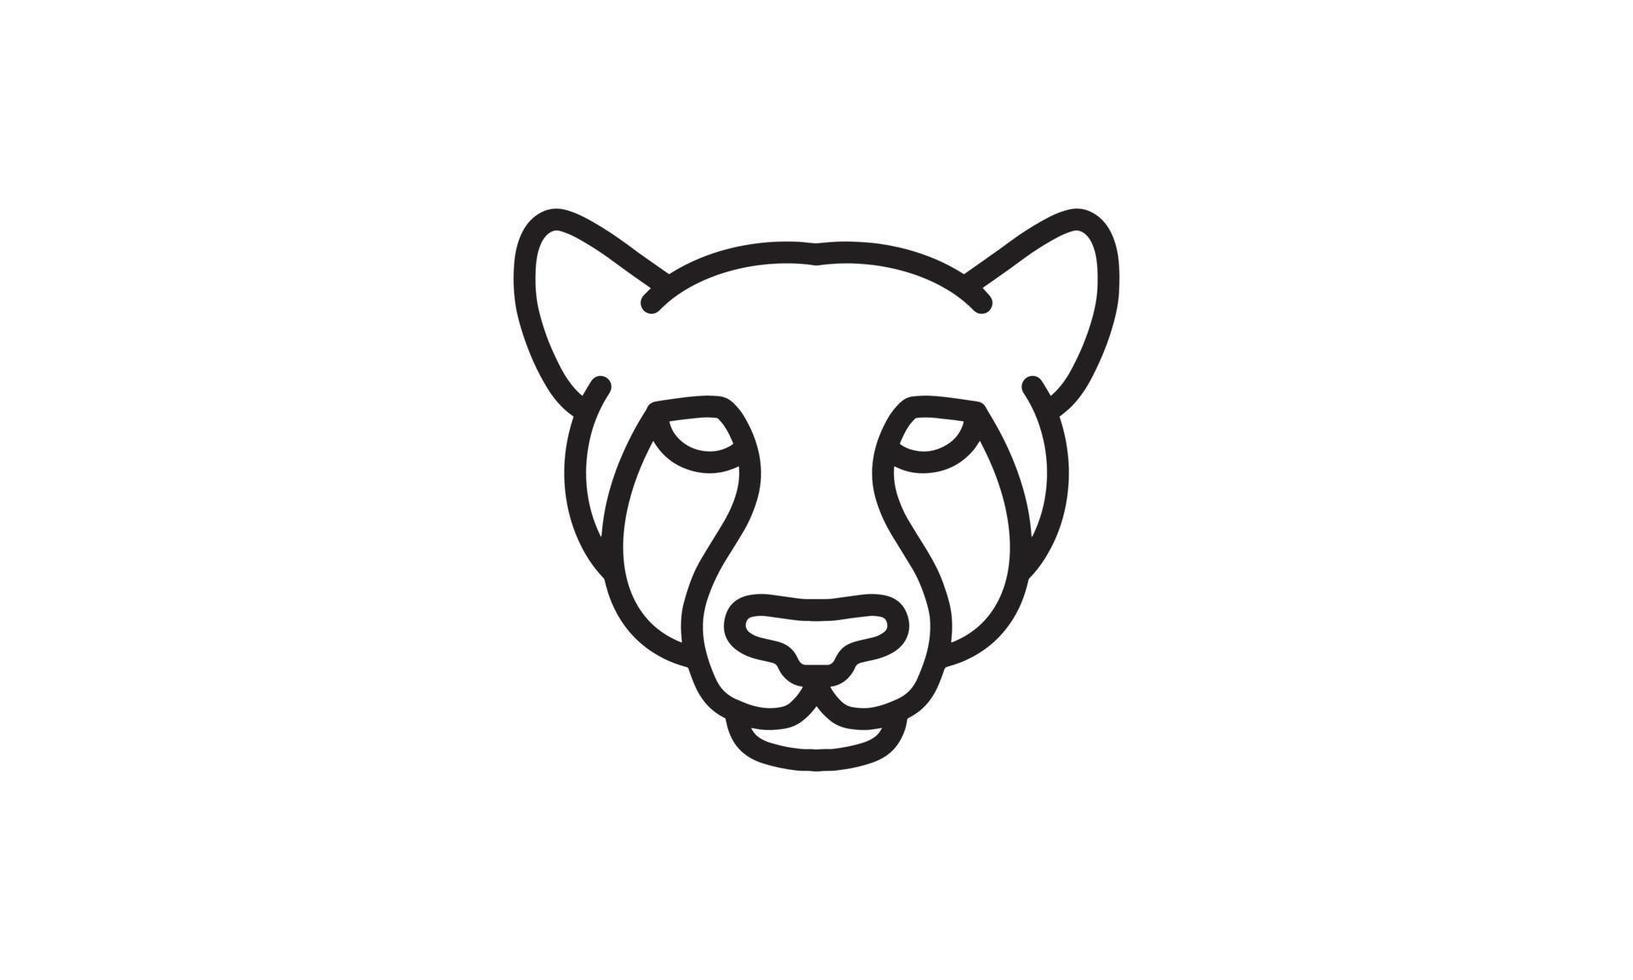 Wolf Vektor Liniensymbol, Tierkopf Vektor Strichzeichnungen, isolierte Tierillustration für Logo desain